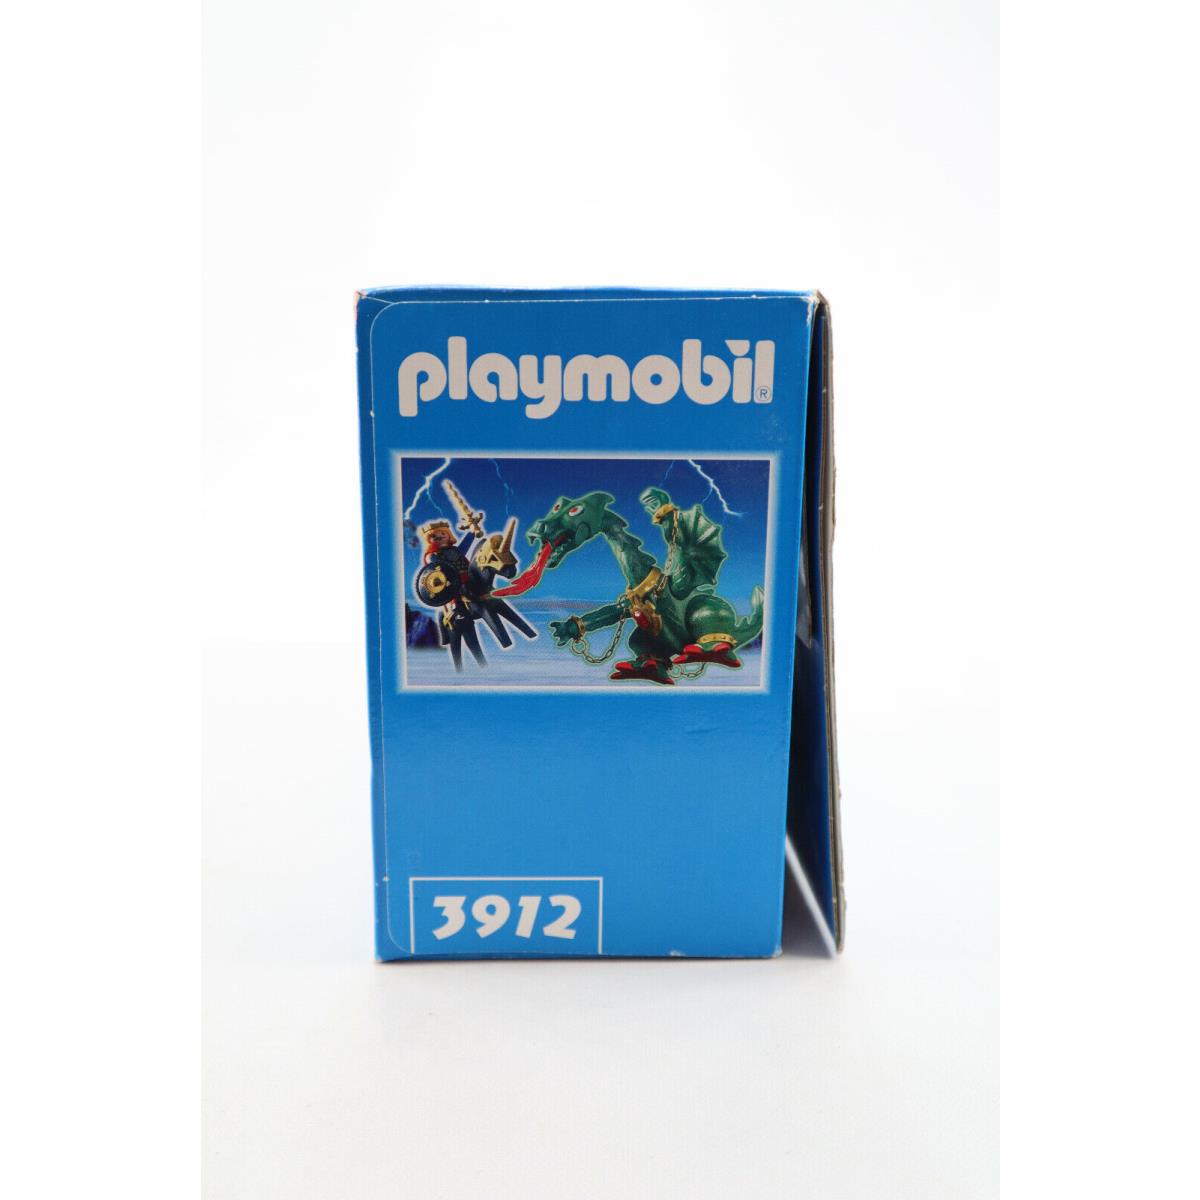 Playmobil toy 